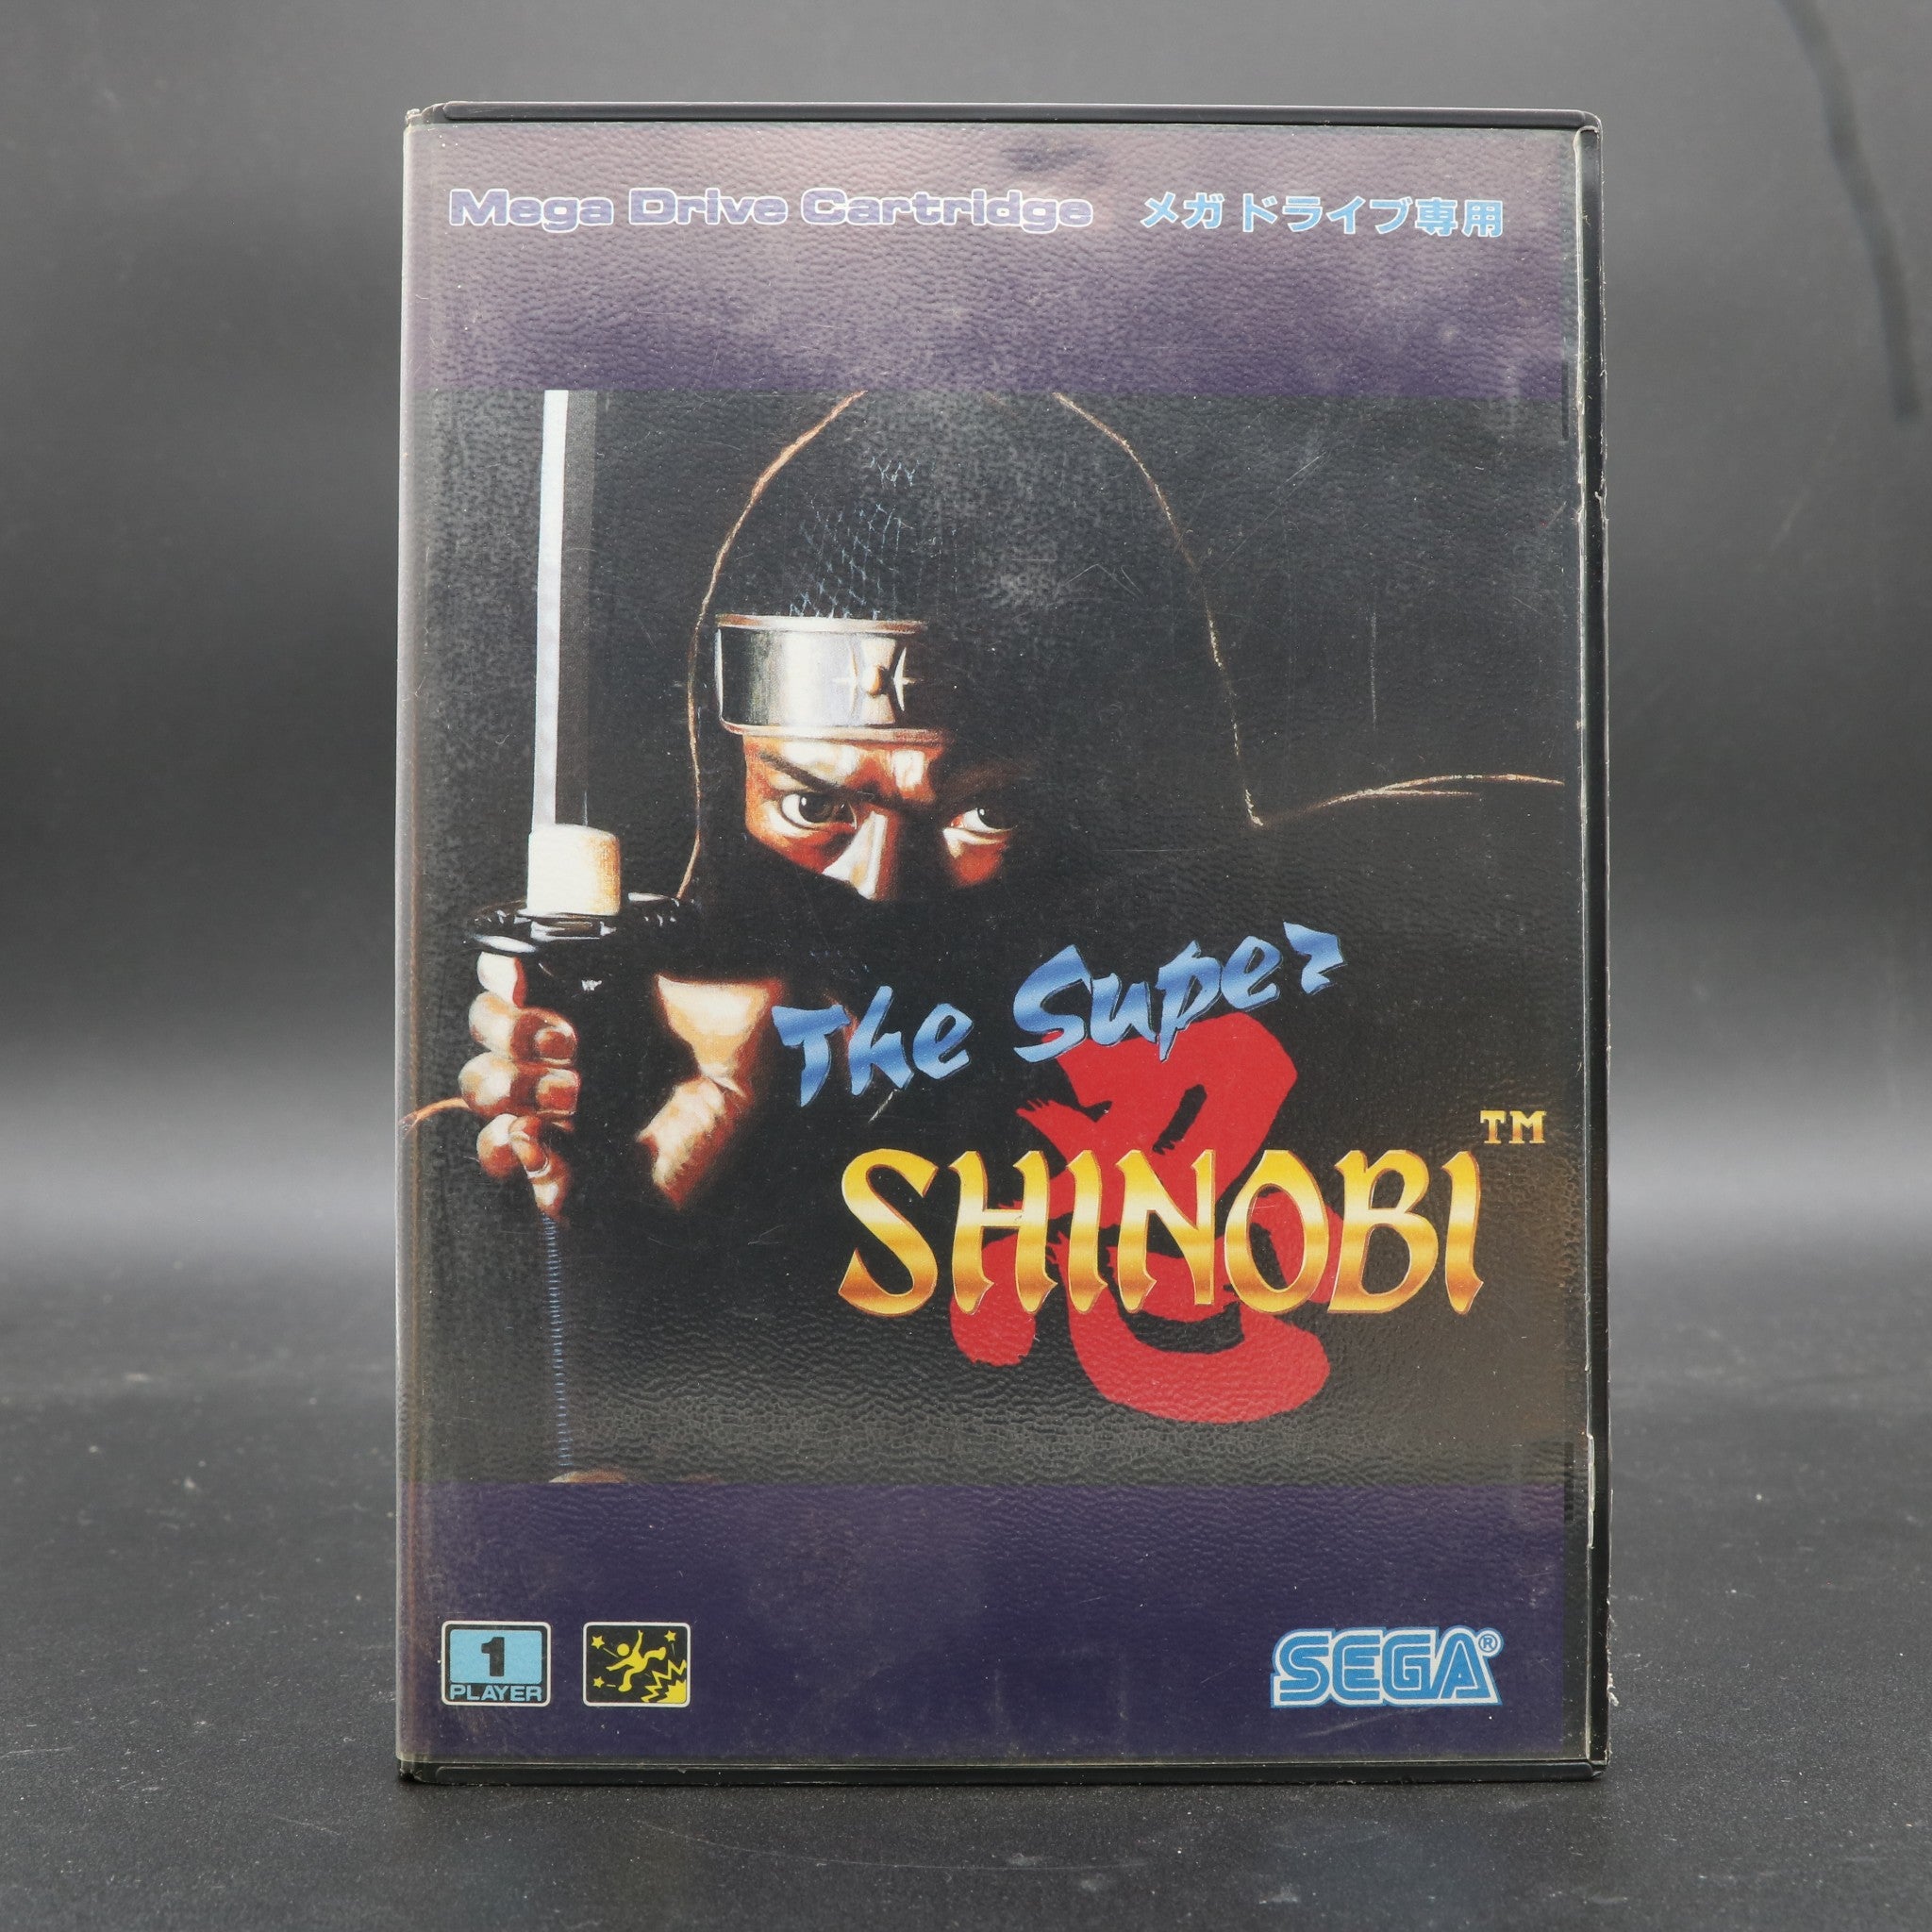 The Super Shinobi - Sega Mega Drive Game - Japanese Version - Boxed